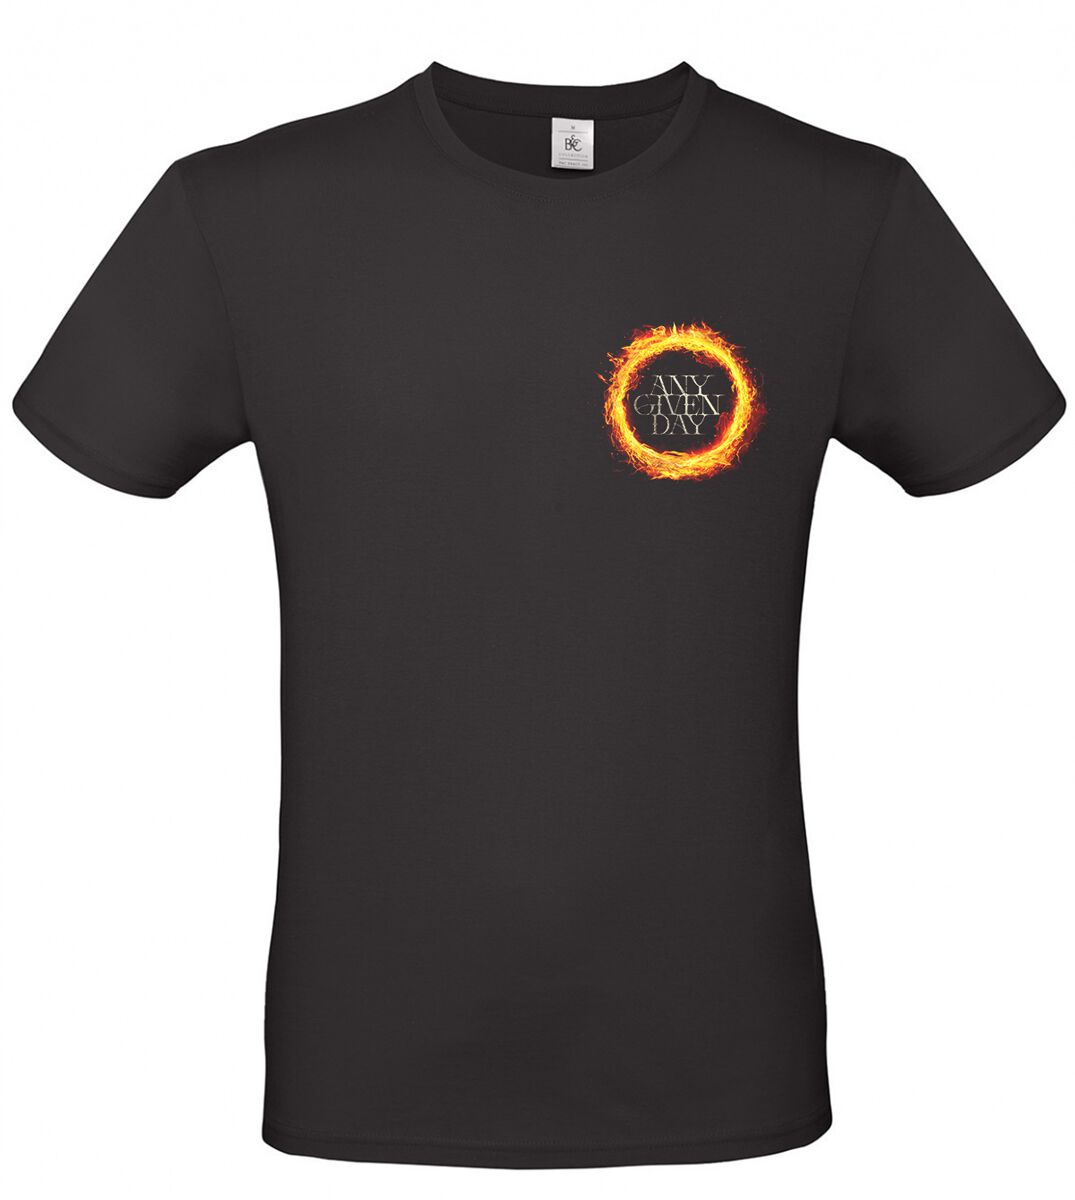 Any Given Day T-Shirt - Limitless - S bis XL - für Männer - Größe S - schwarz  - EMP exklusives Merchandise!